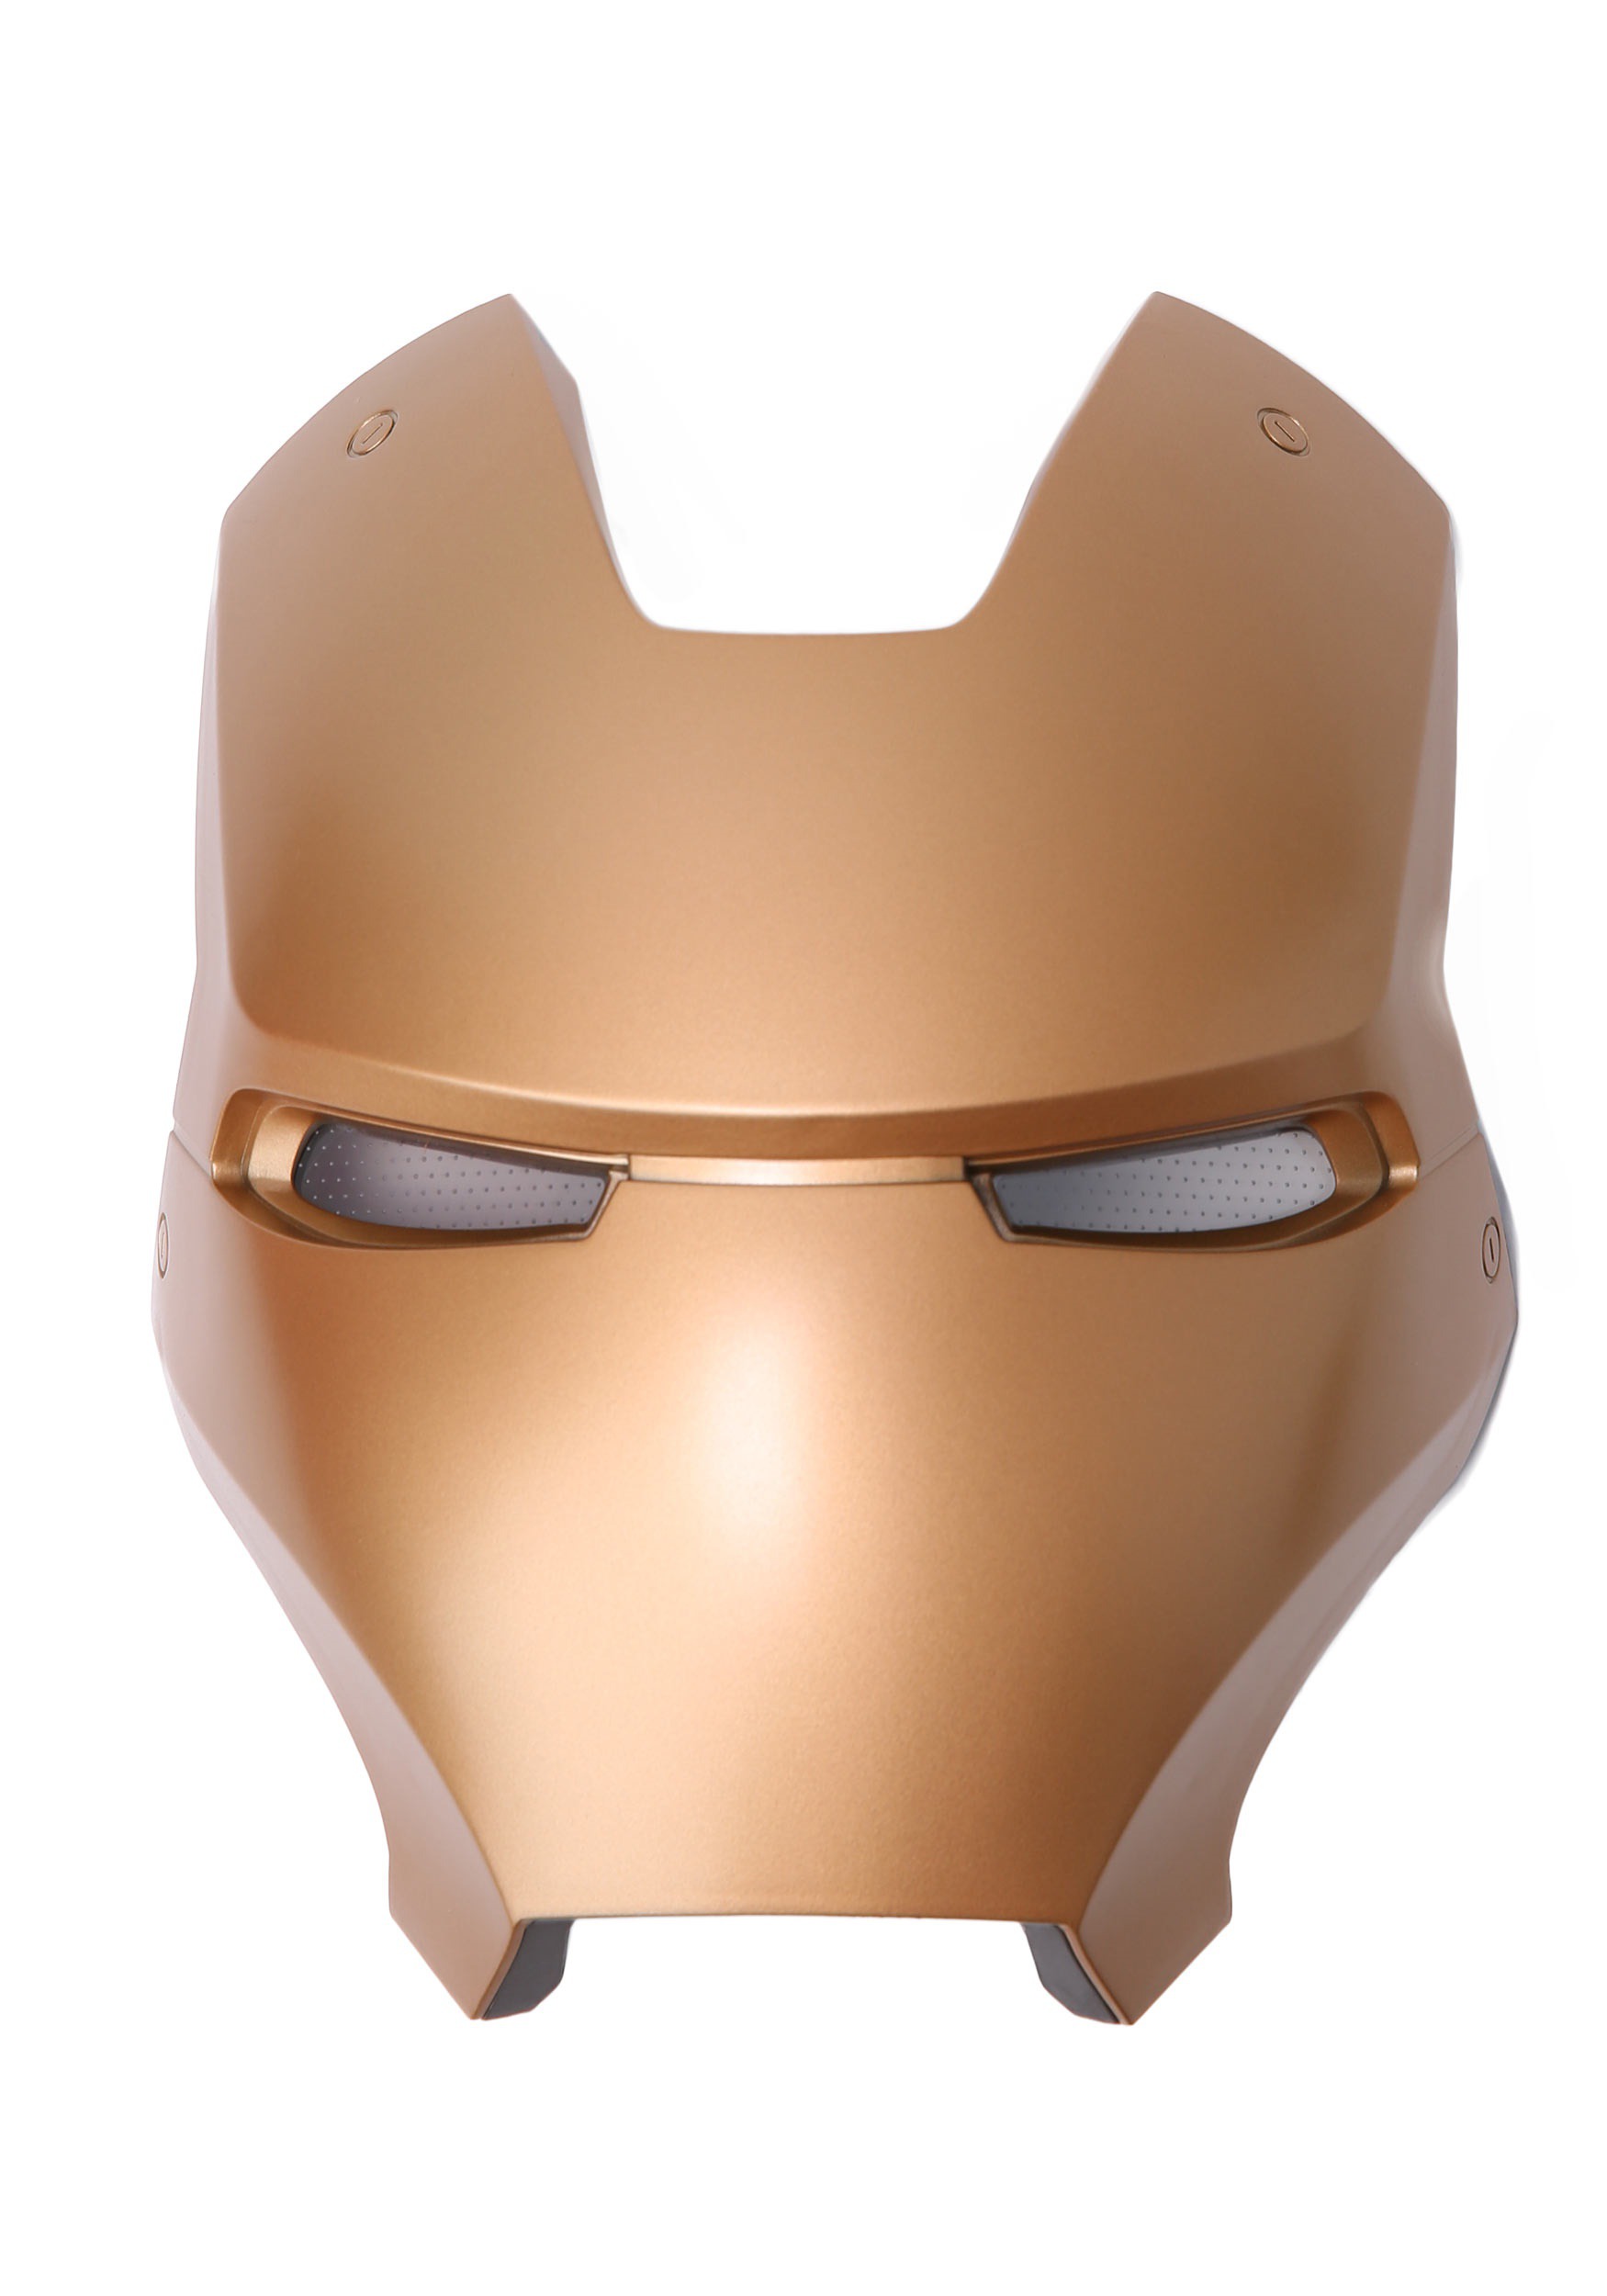 Marvel Legends - Réplique Masque éléctronique Spider-Man (Iron